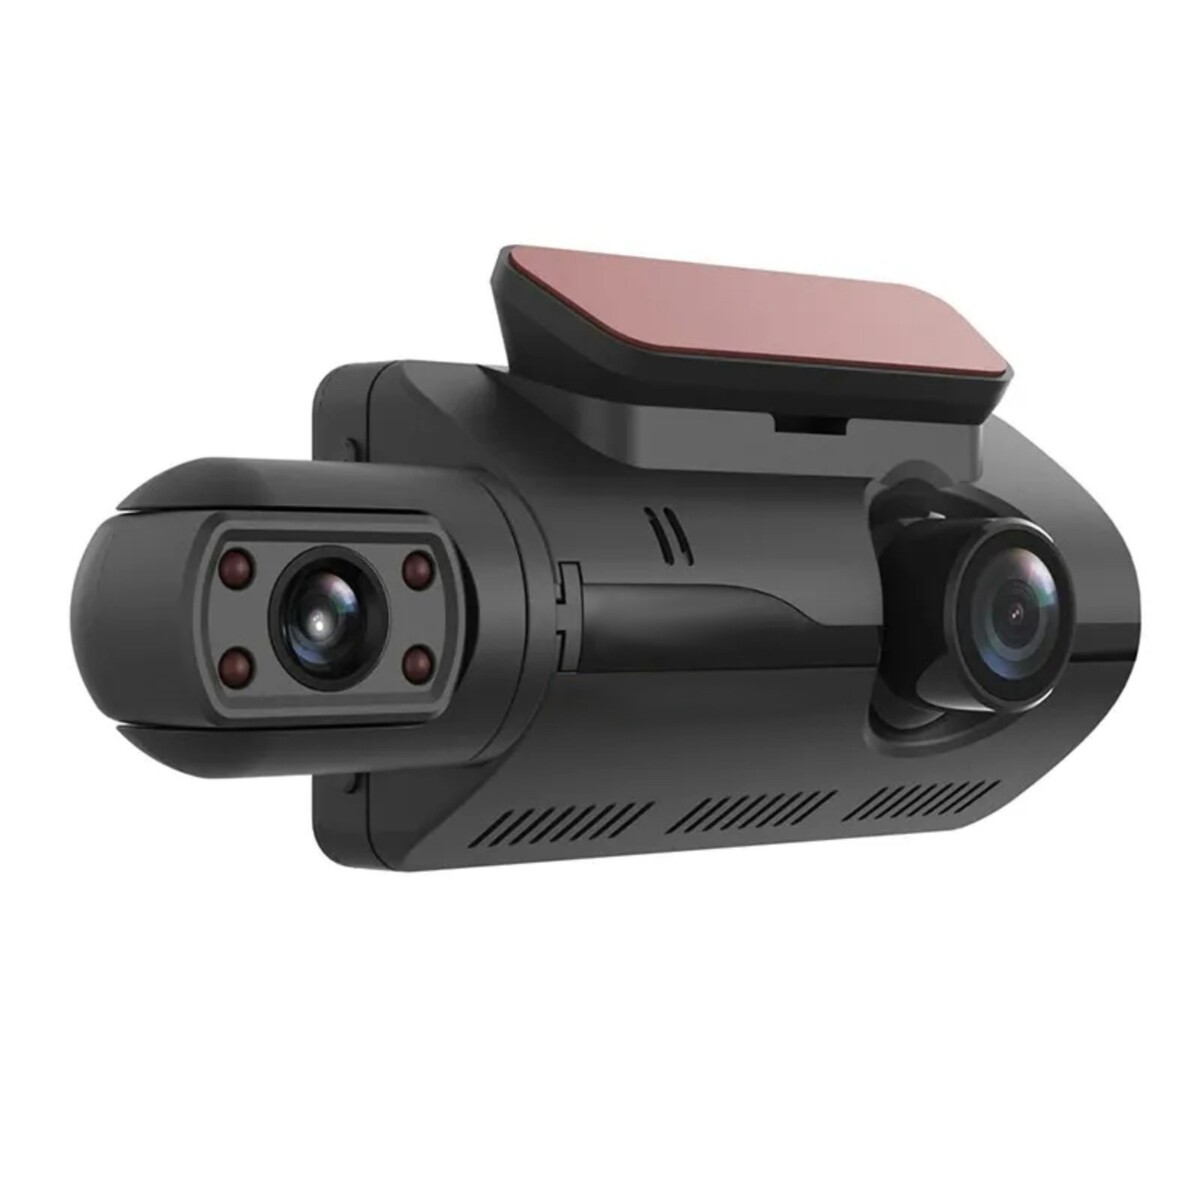 Видеорегистратор, 3 камеры, fhd 1080, ips 3.0, обзор 120° видеорегистратор navitel r480 2k 2 2560x1440 160° sony imx335 2k